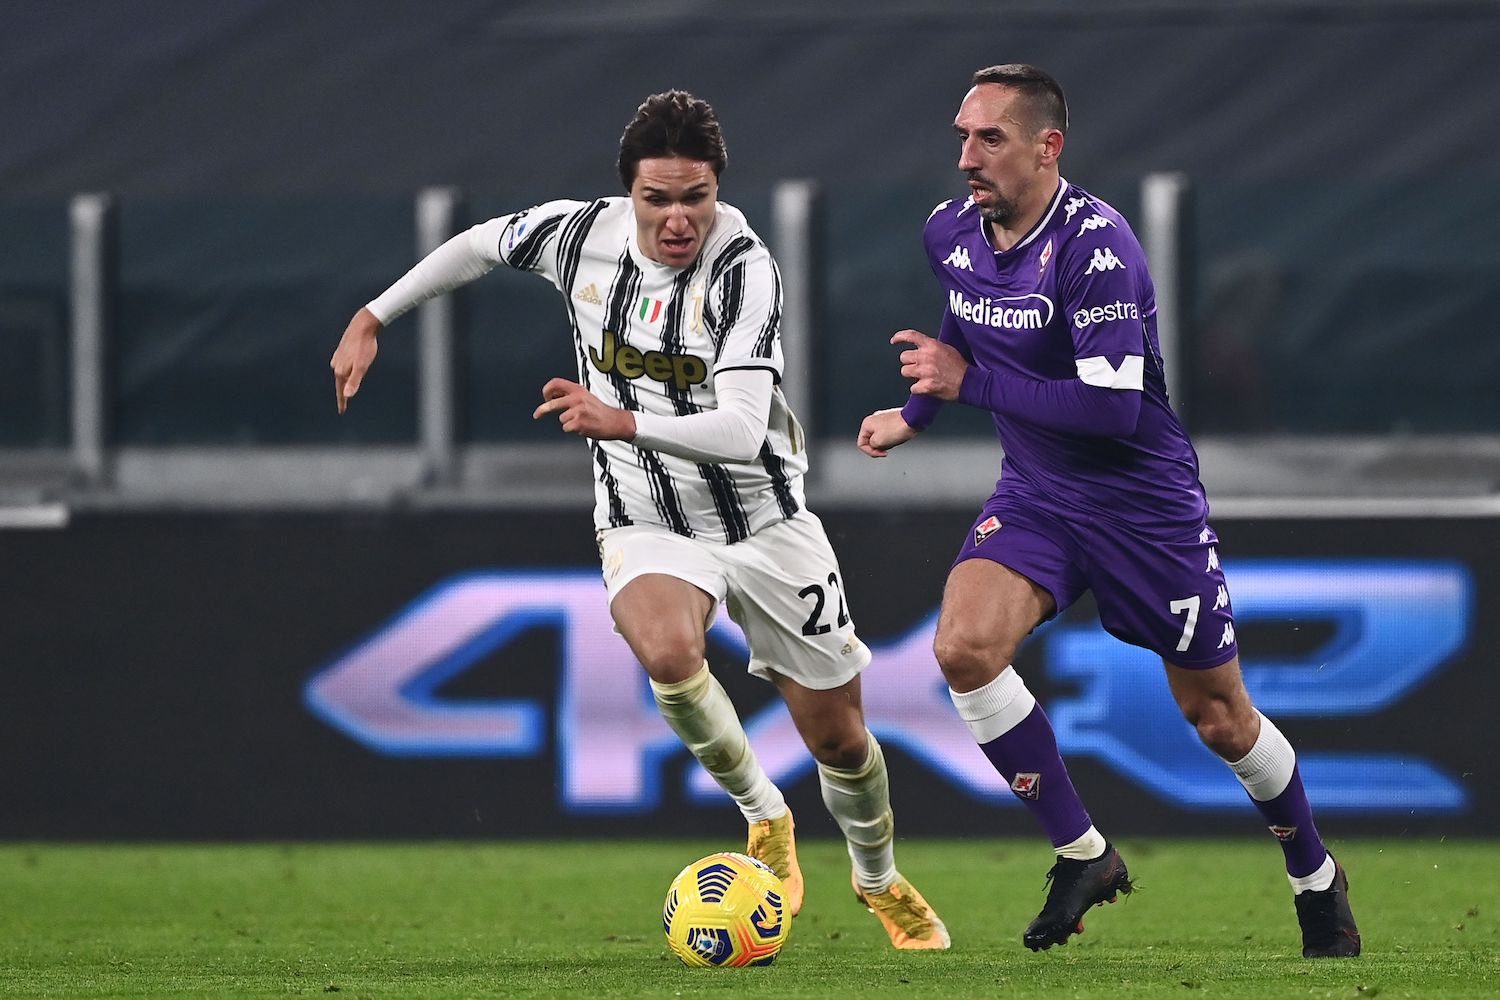 Serie A, 14a giornata: Crotone-Parma 2-1 e Juventus-Fiorentina 0-3